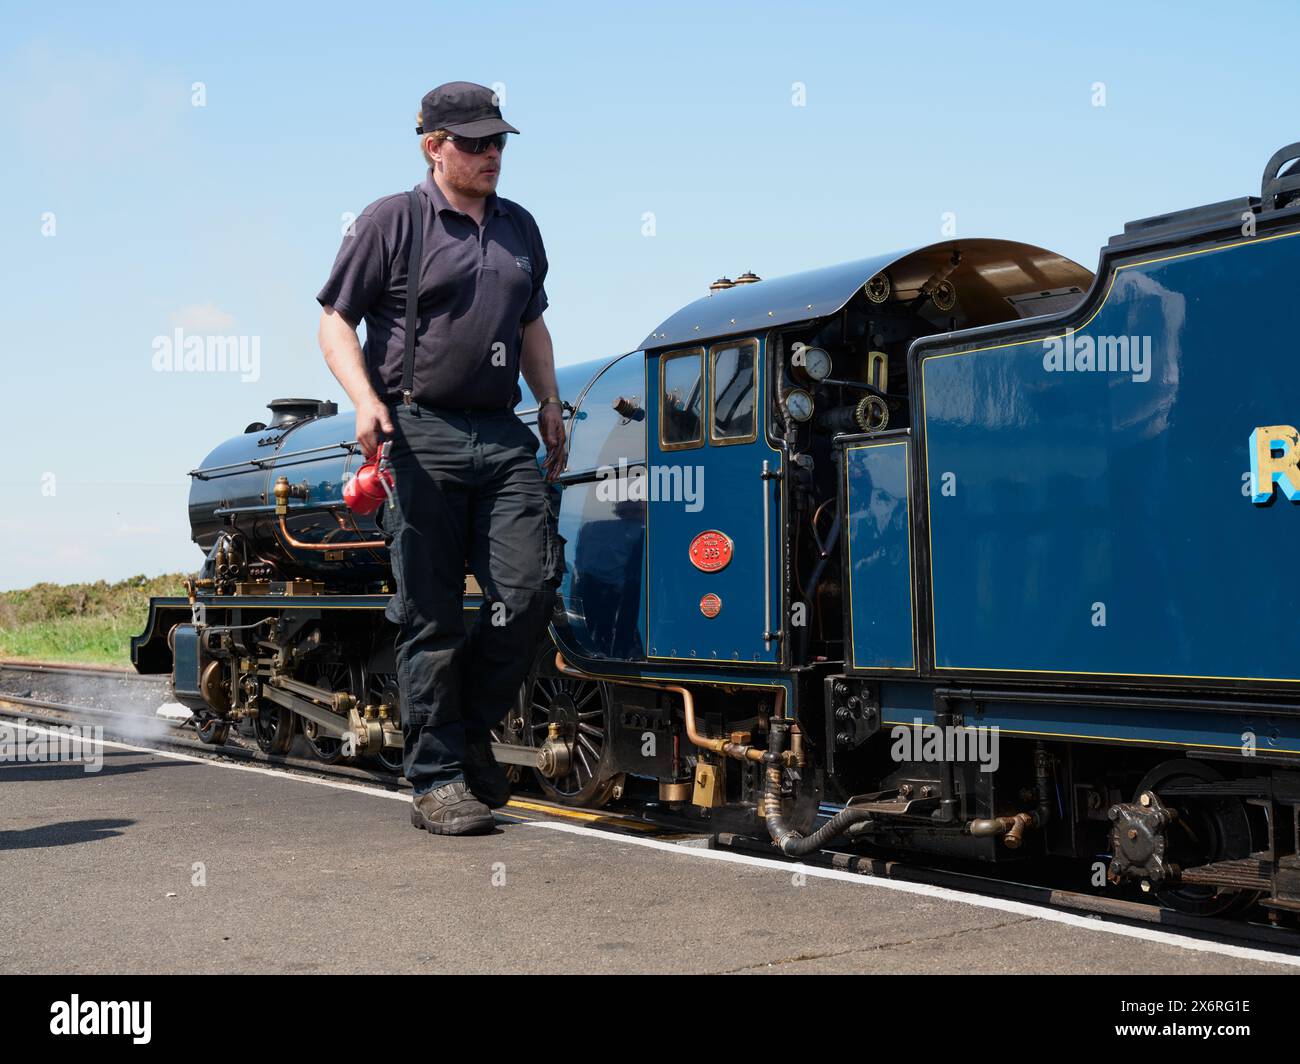 Un chauffeur de moteur à vapeur qui entretient une locomotive Samson sur la Romney, Hythe and Dymchurch Railway RH&DR à Dungeness Kent Angleterre Banque D'Images